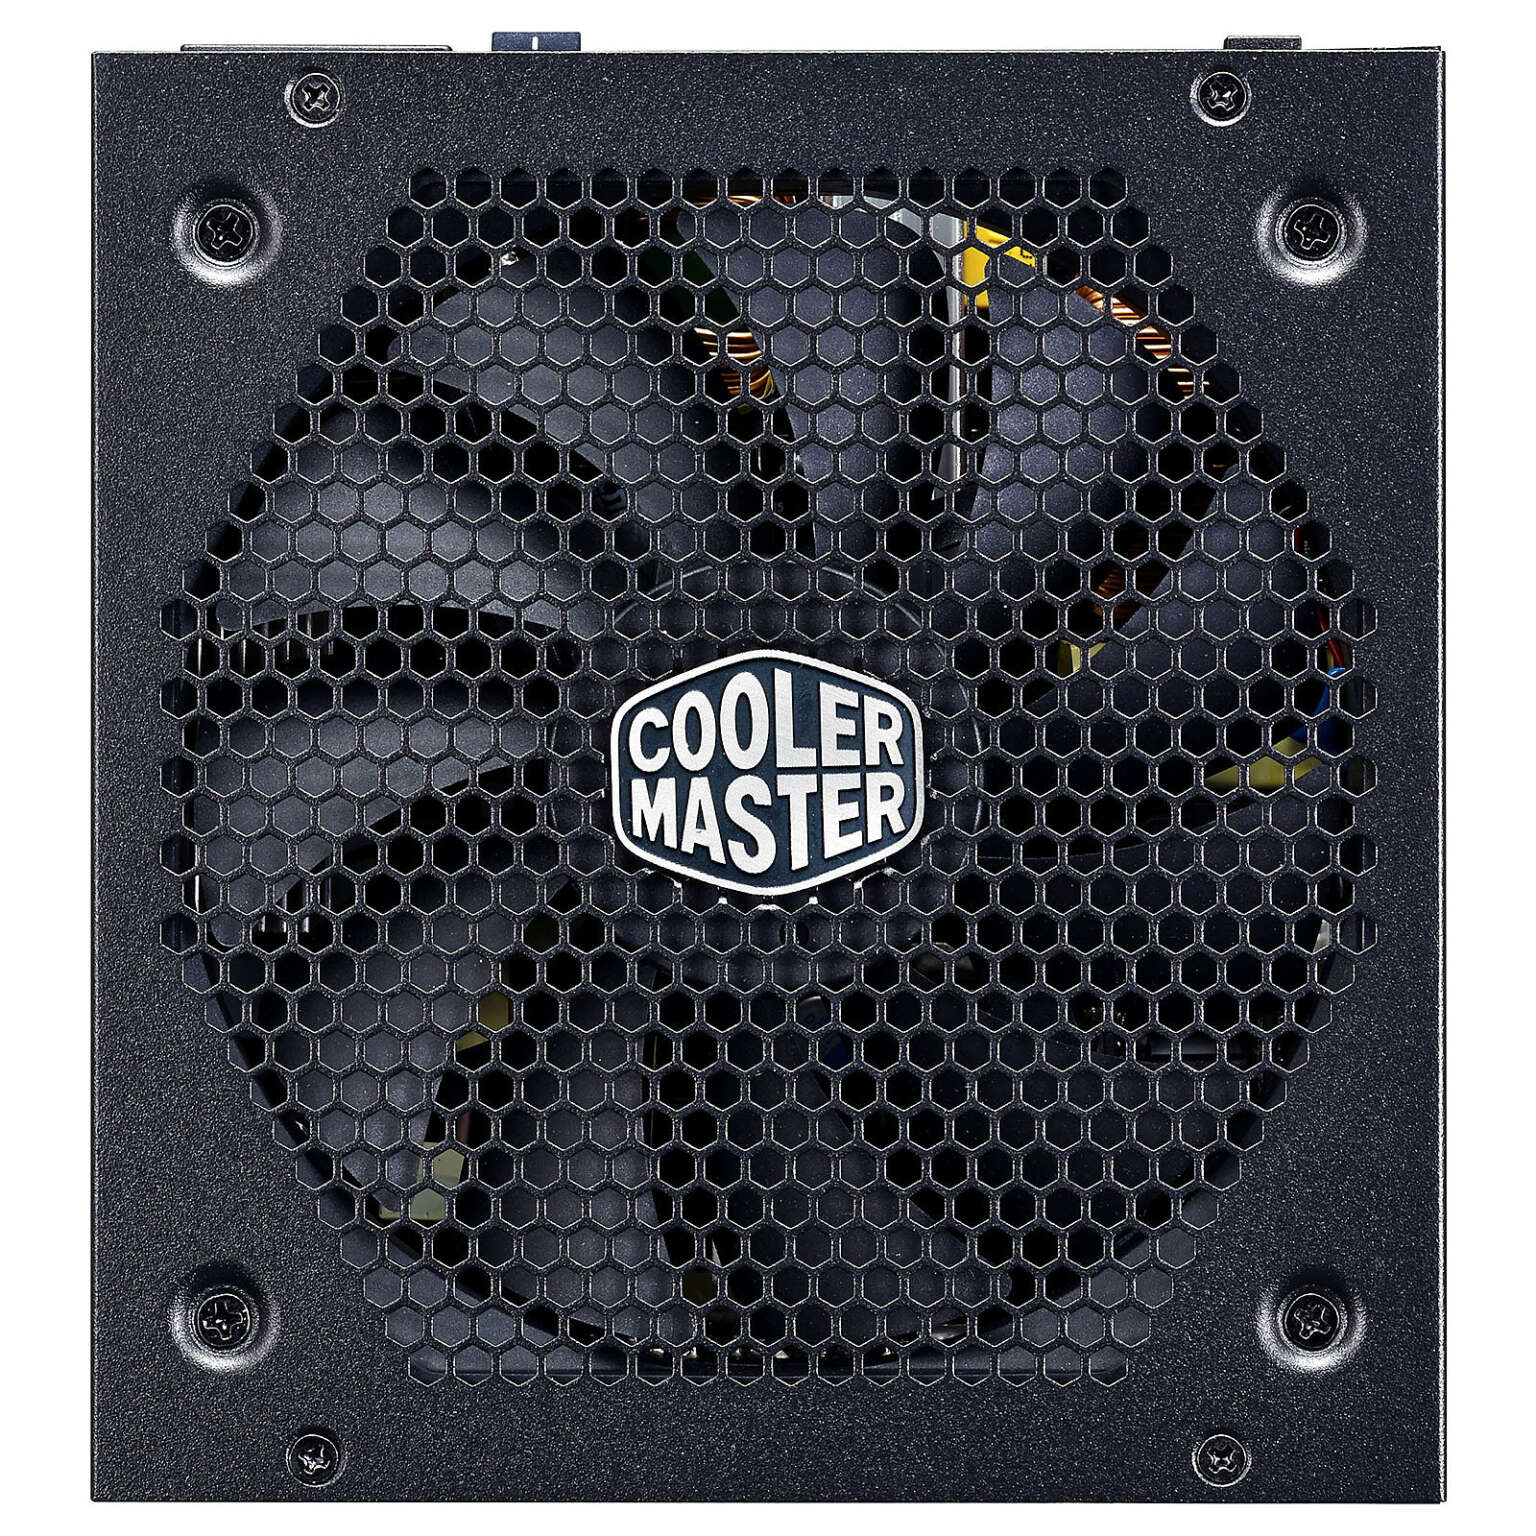 Cooler Master 850 GOLD prix maroc rabat